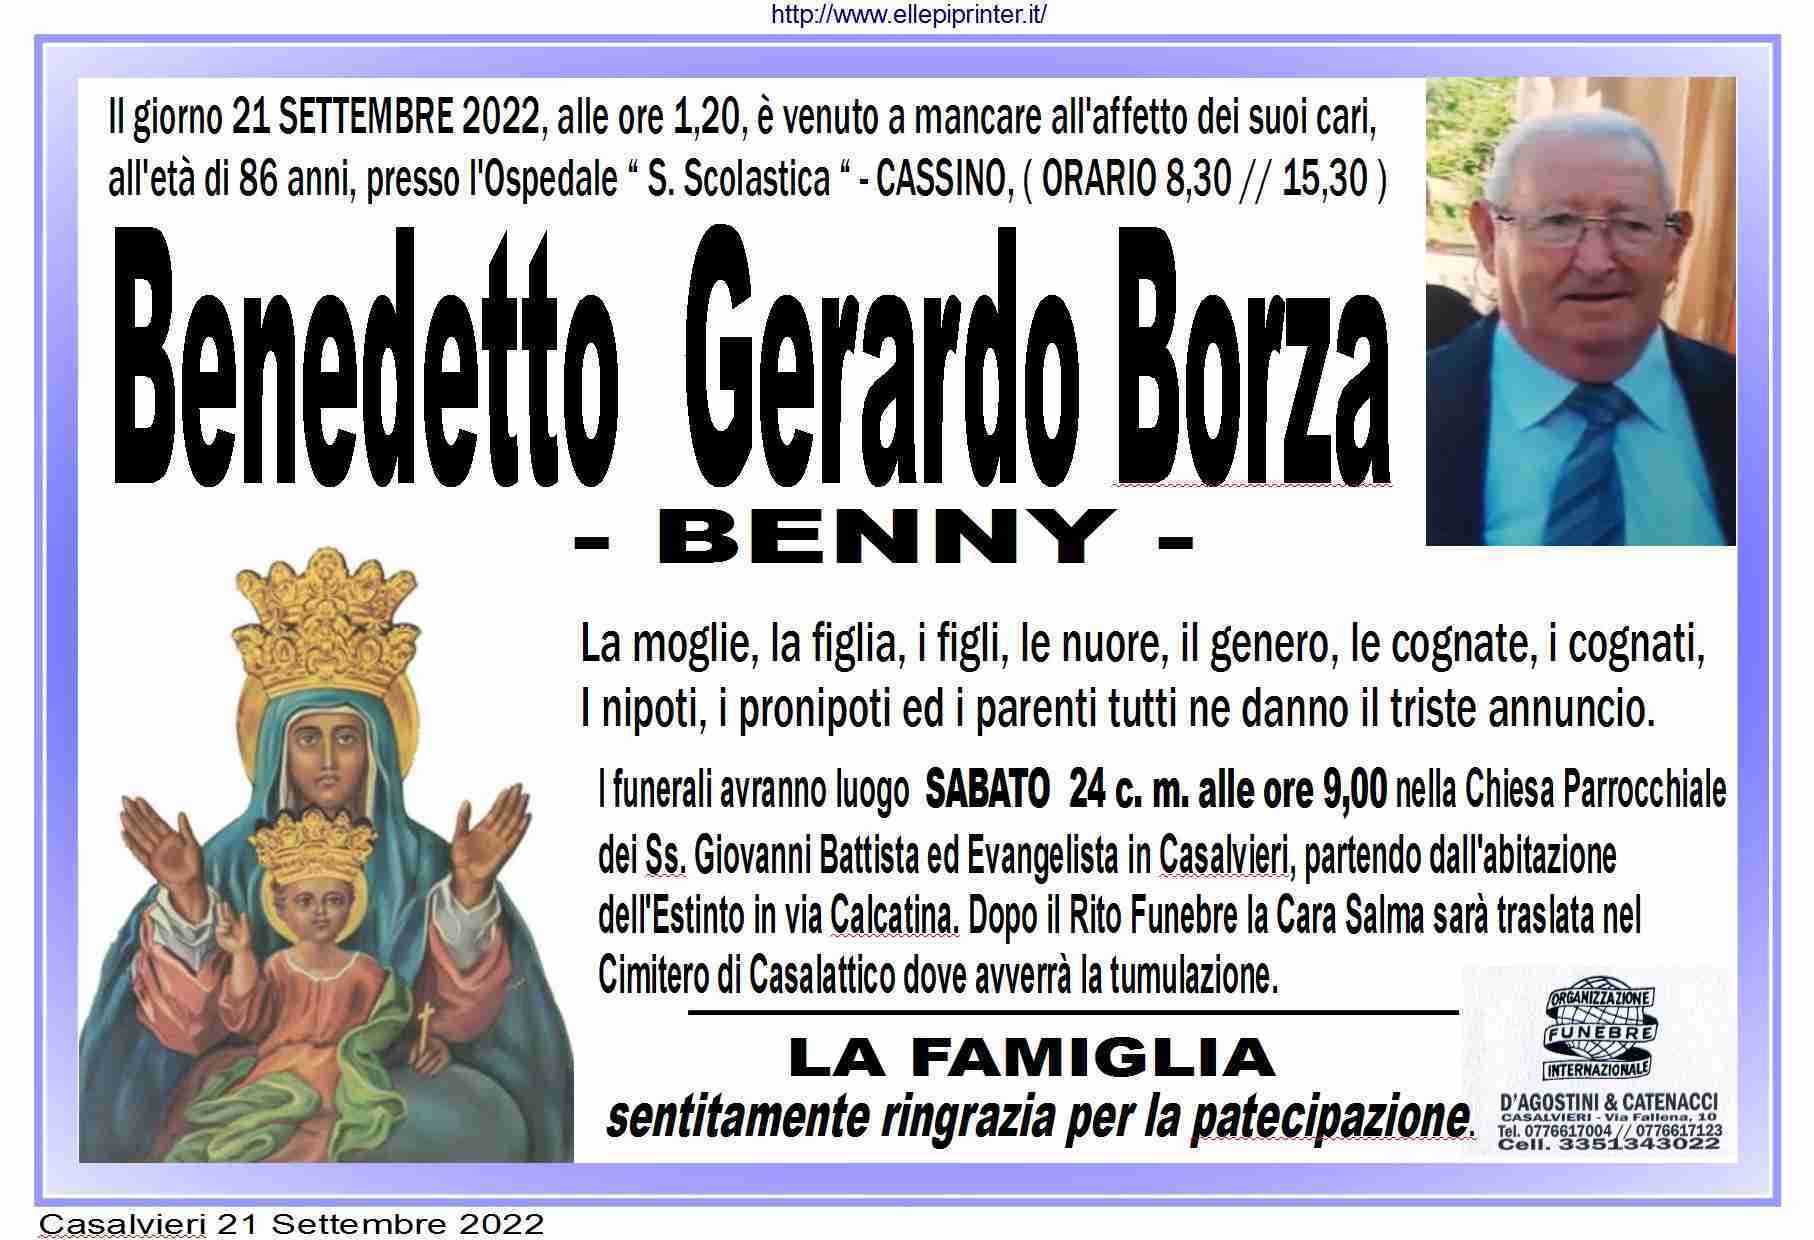 Benedetto Gerardo Borza